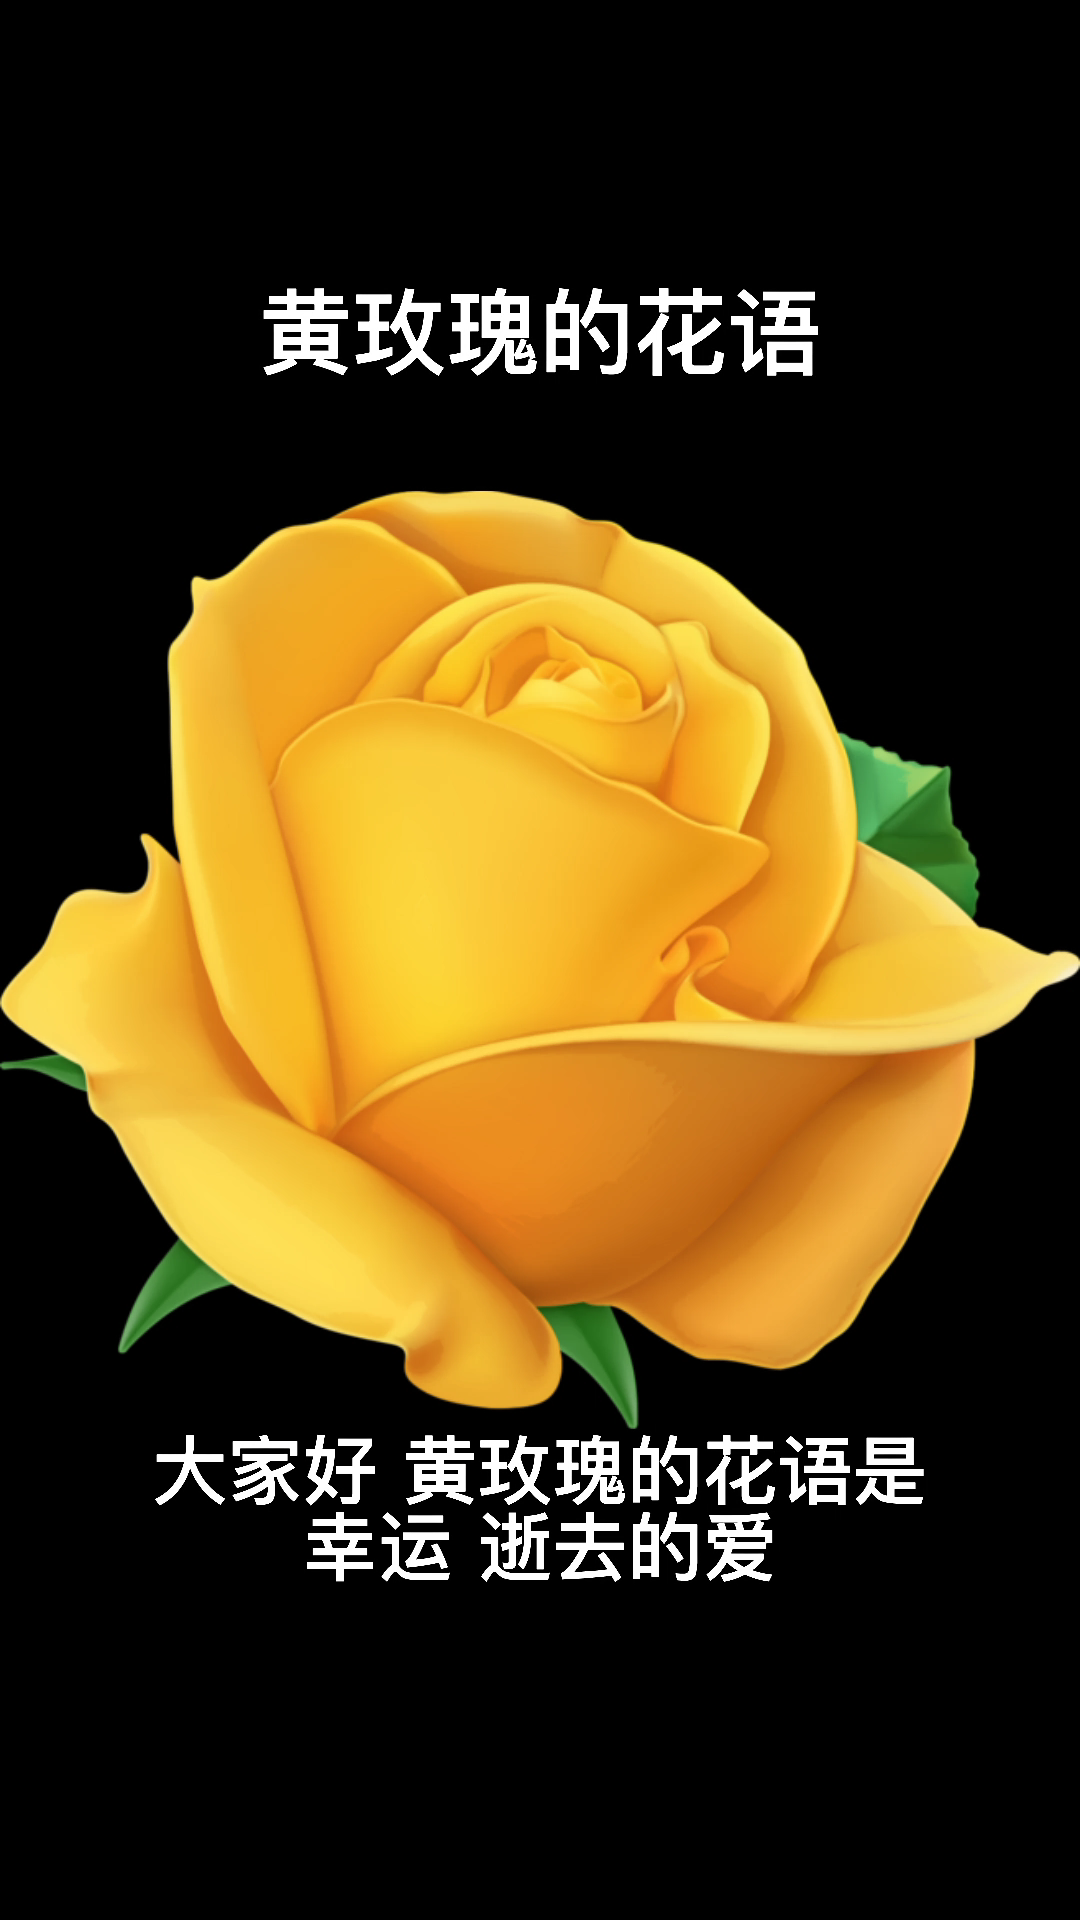 黄玫瑰代表什么图片